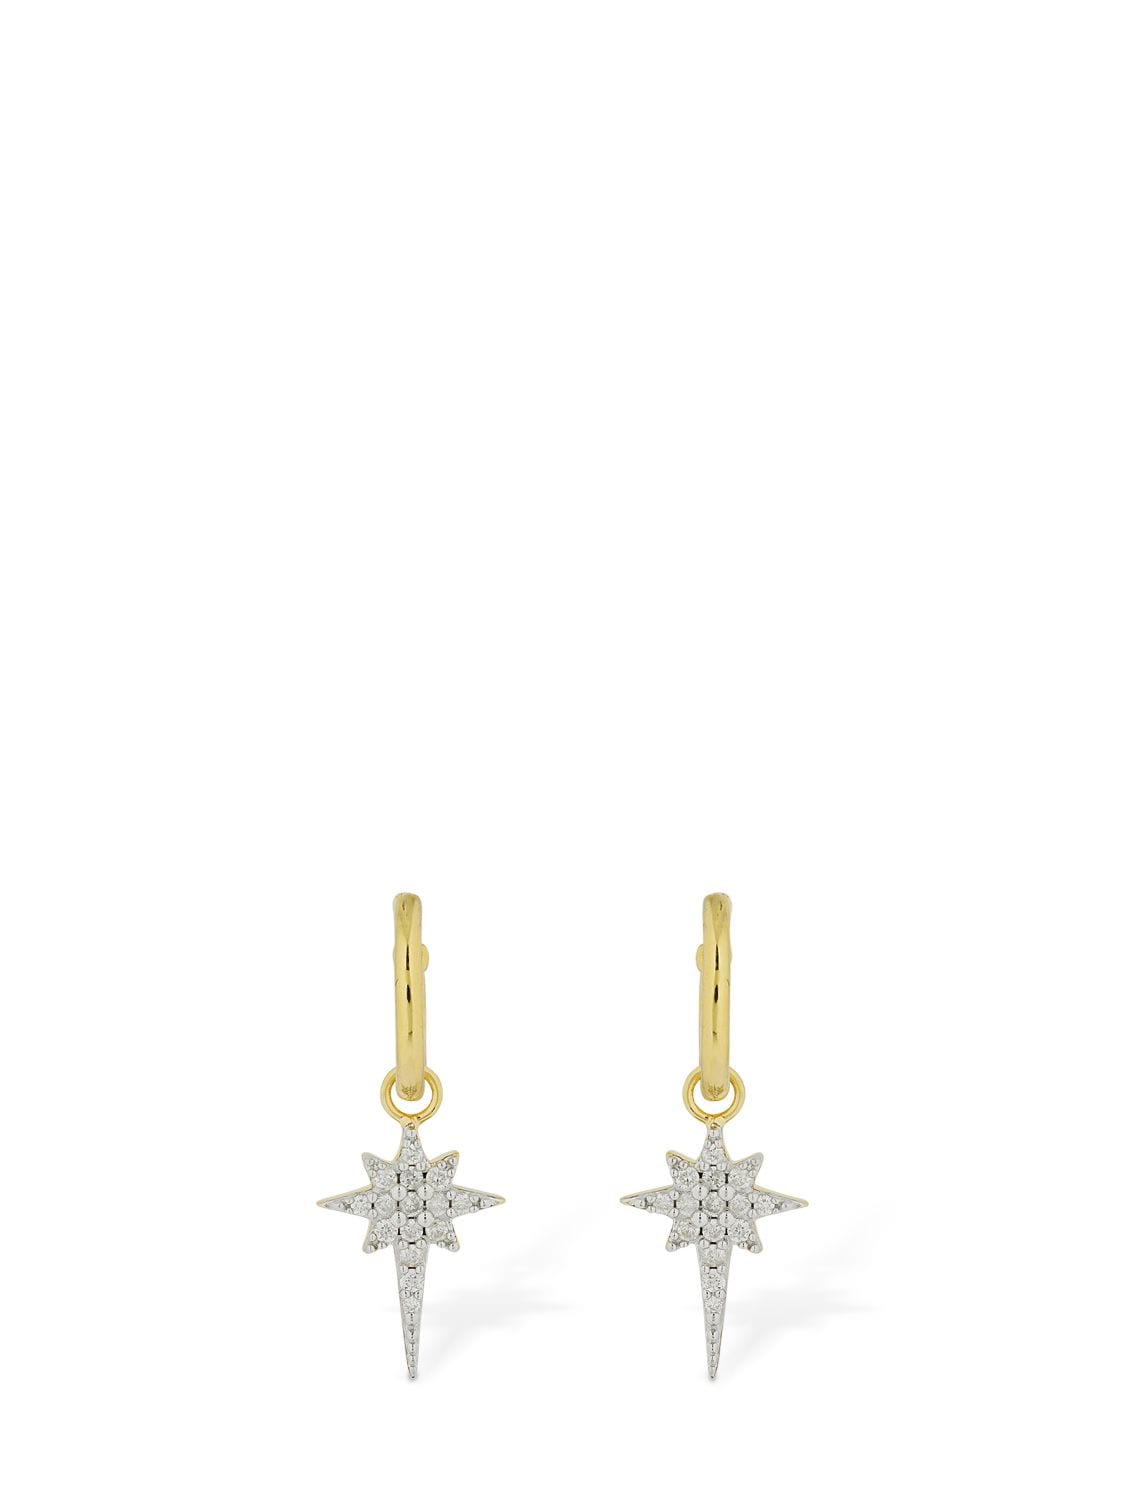 Sophie Lis 22kt Fallen Star Earrings W/ Diamonds In Gold,crystal